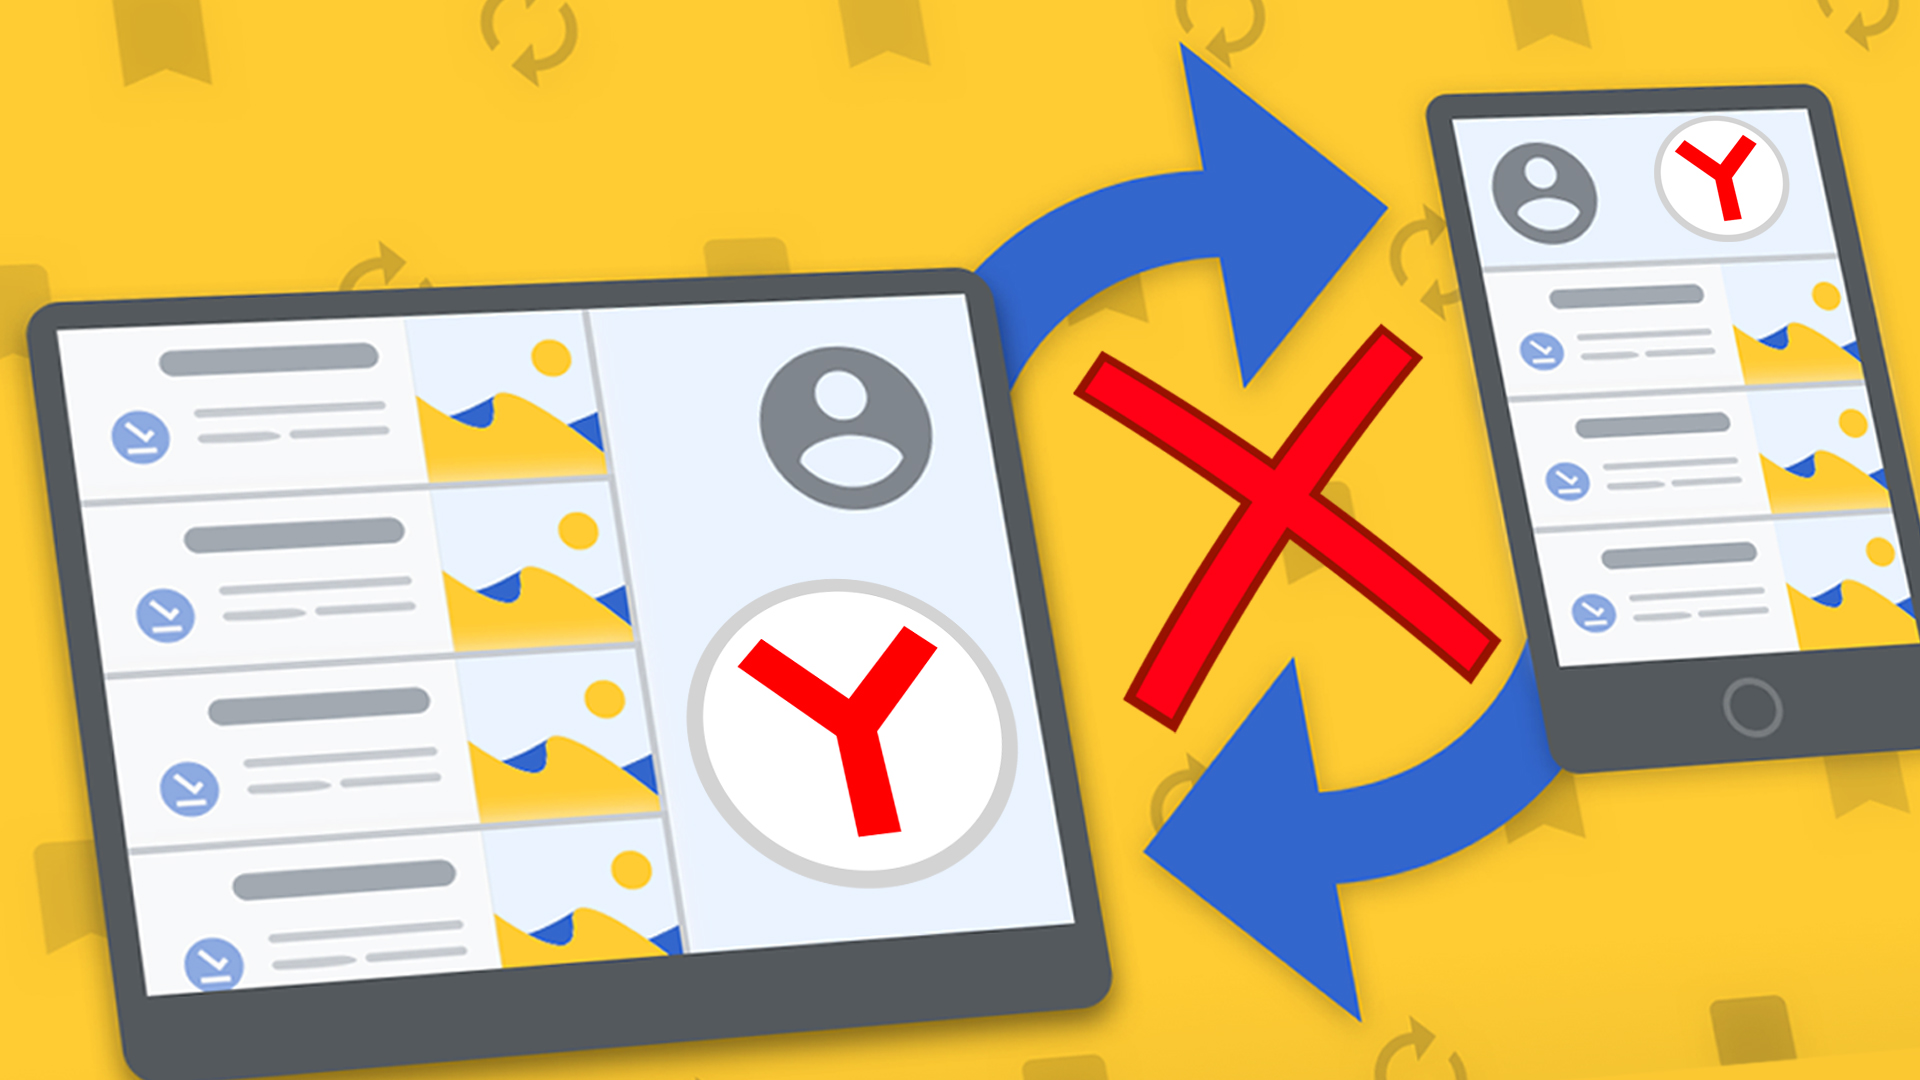 Наглядная демонстрация отключения синхронизации в Яндекс браузера в виде графики: компьютер и смартфон больше не синхронизированы